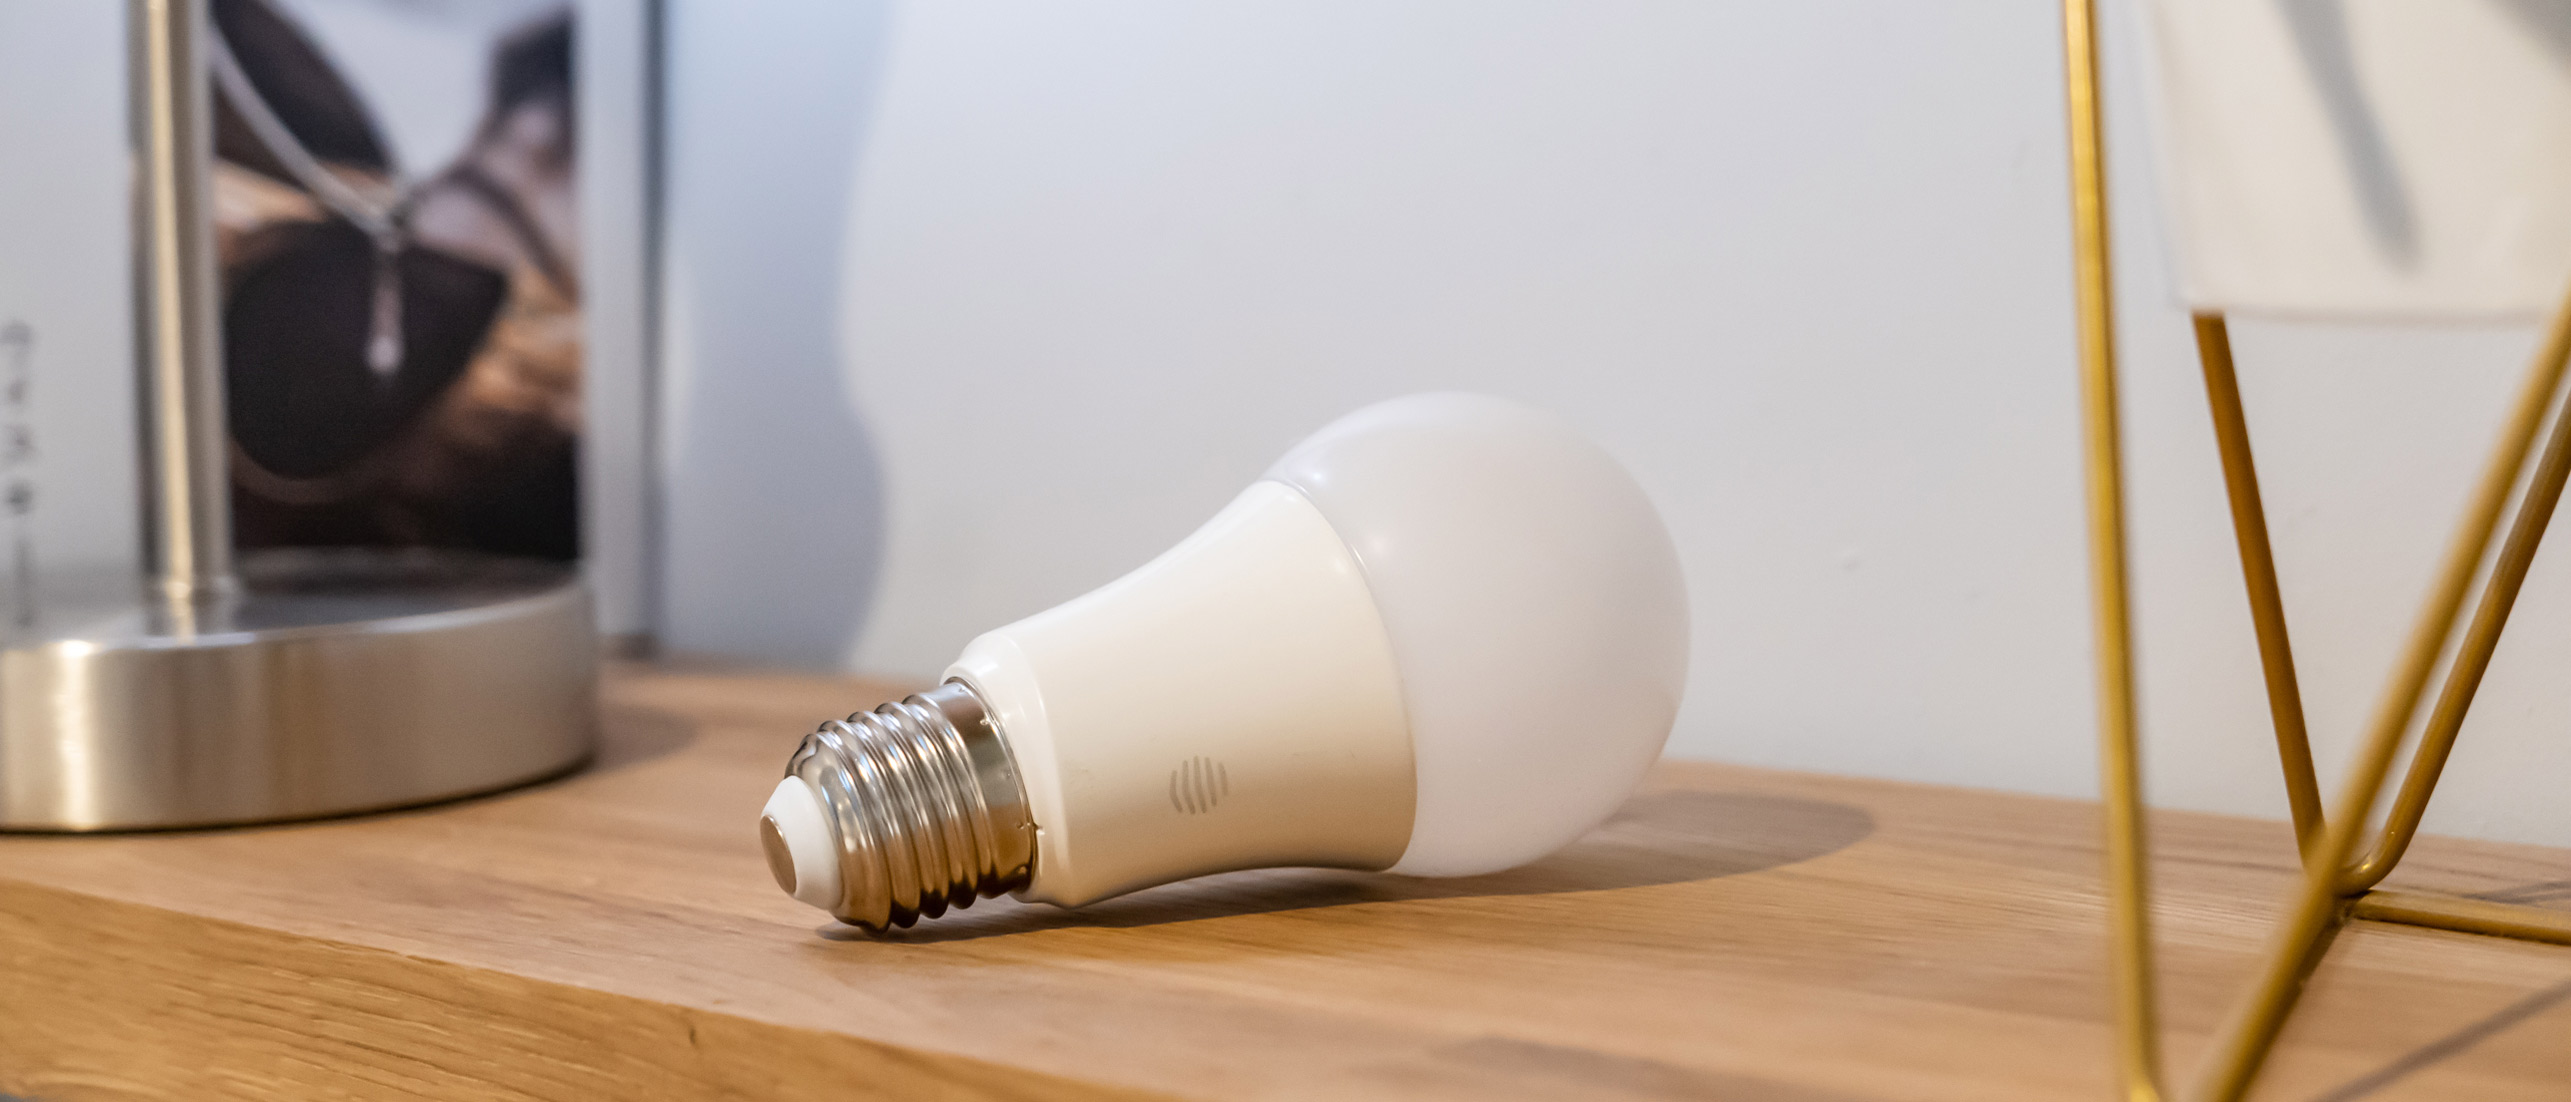 Smartlight Bulb Review 